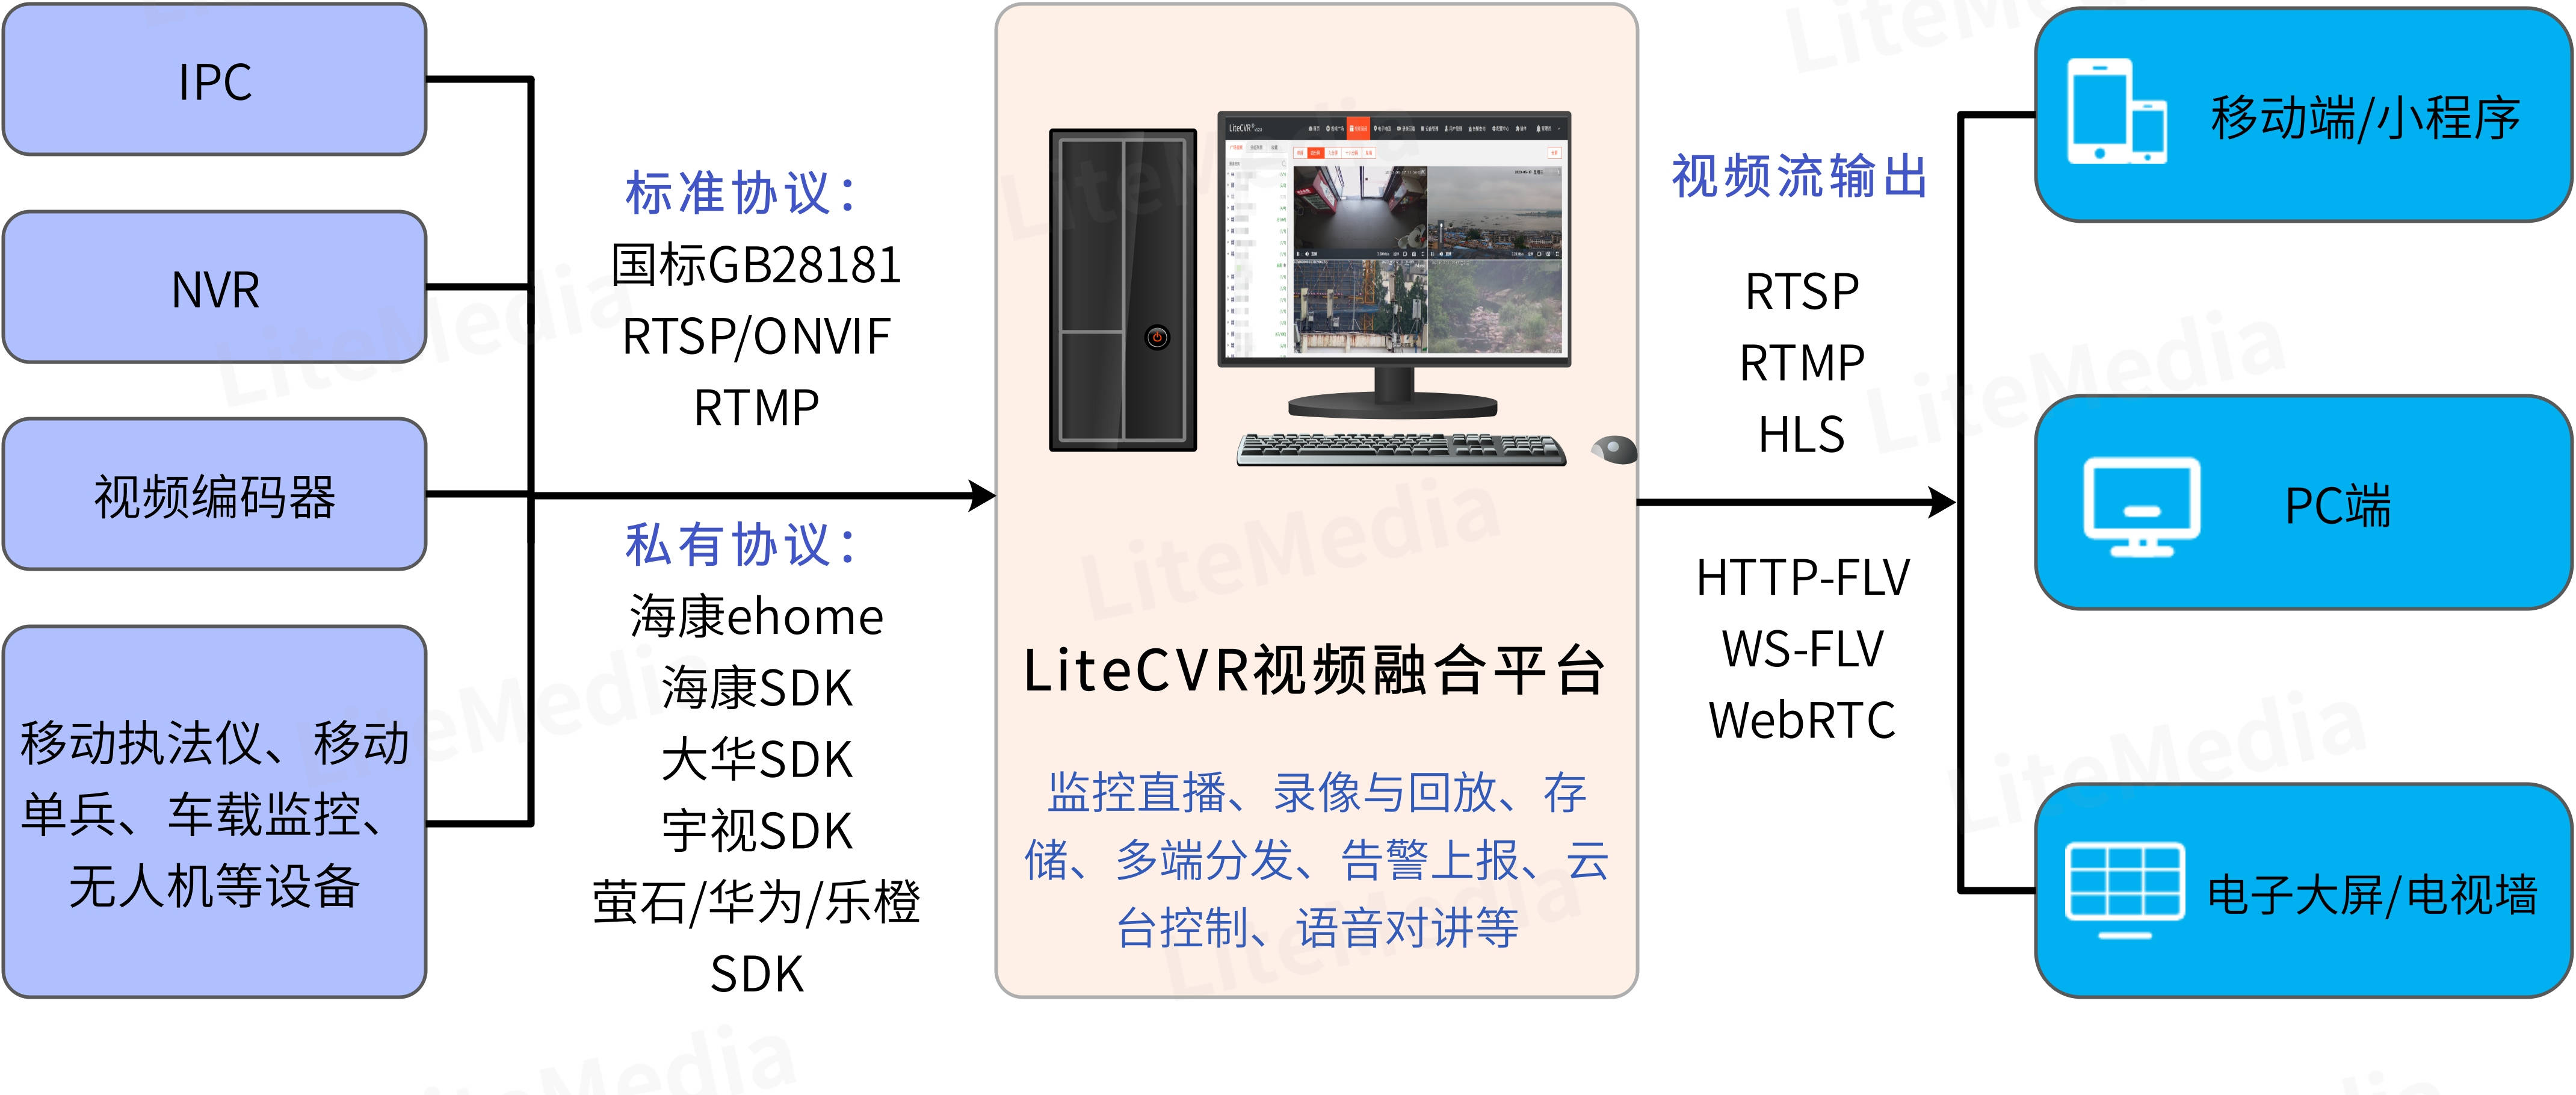 硬盘录像机无法注册安防监控视频平台LiteCVR的原因：端口未开放_用户反馈